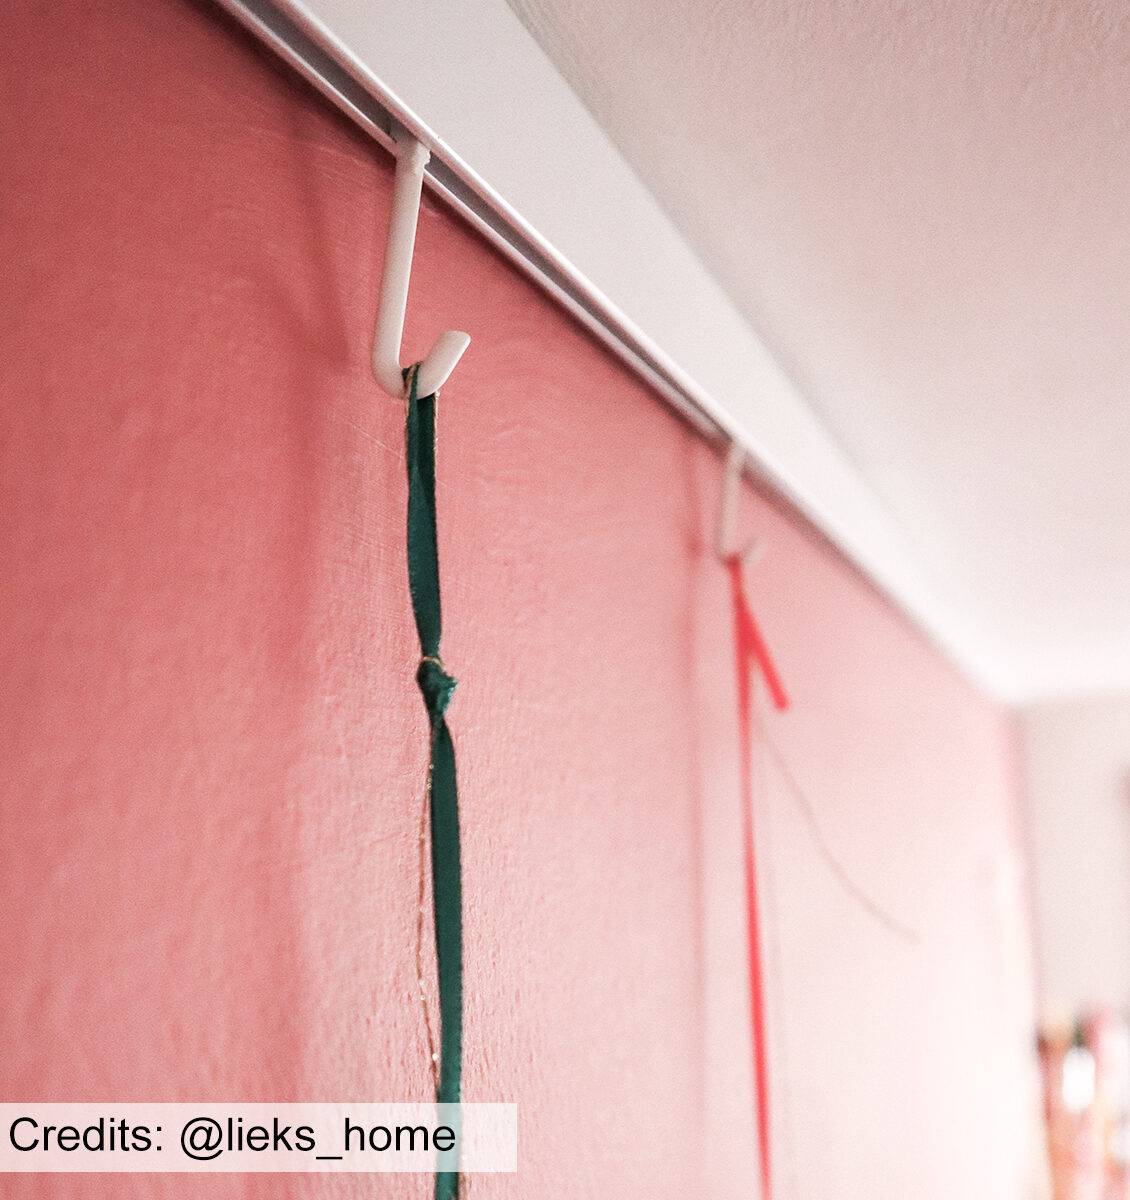 NL kerstslinger opgehangen aan muur met tiwister hooks